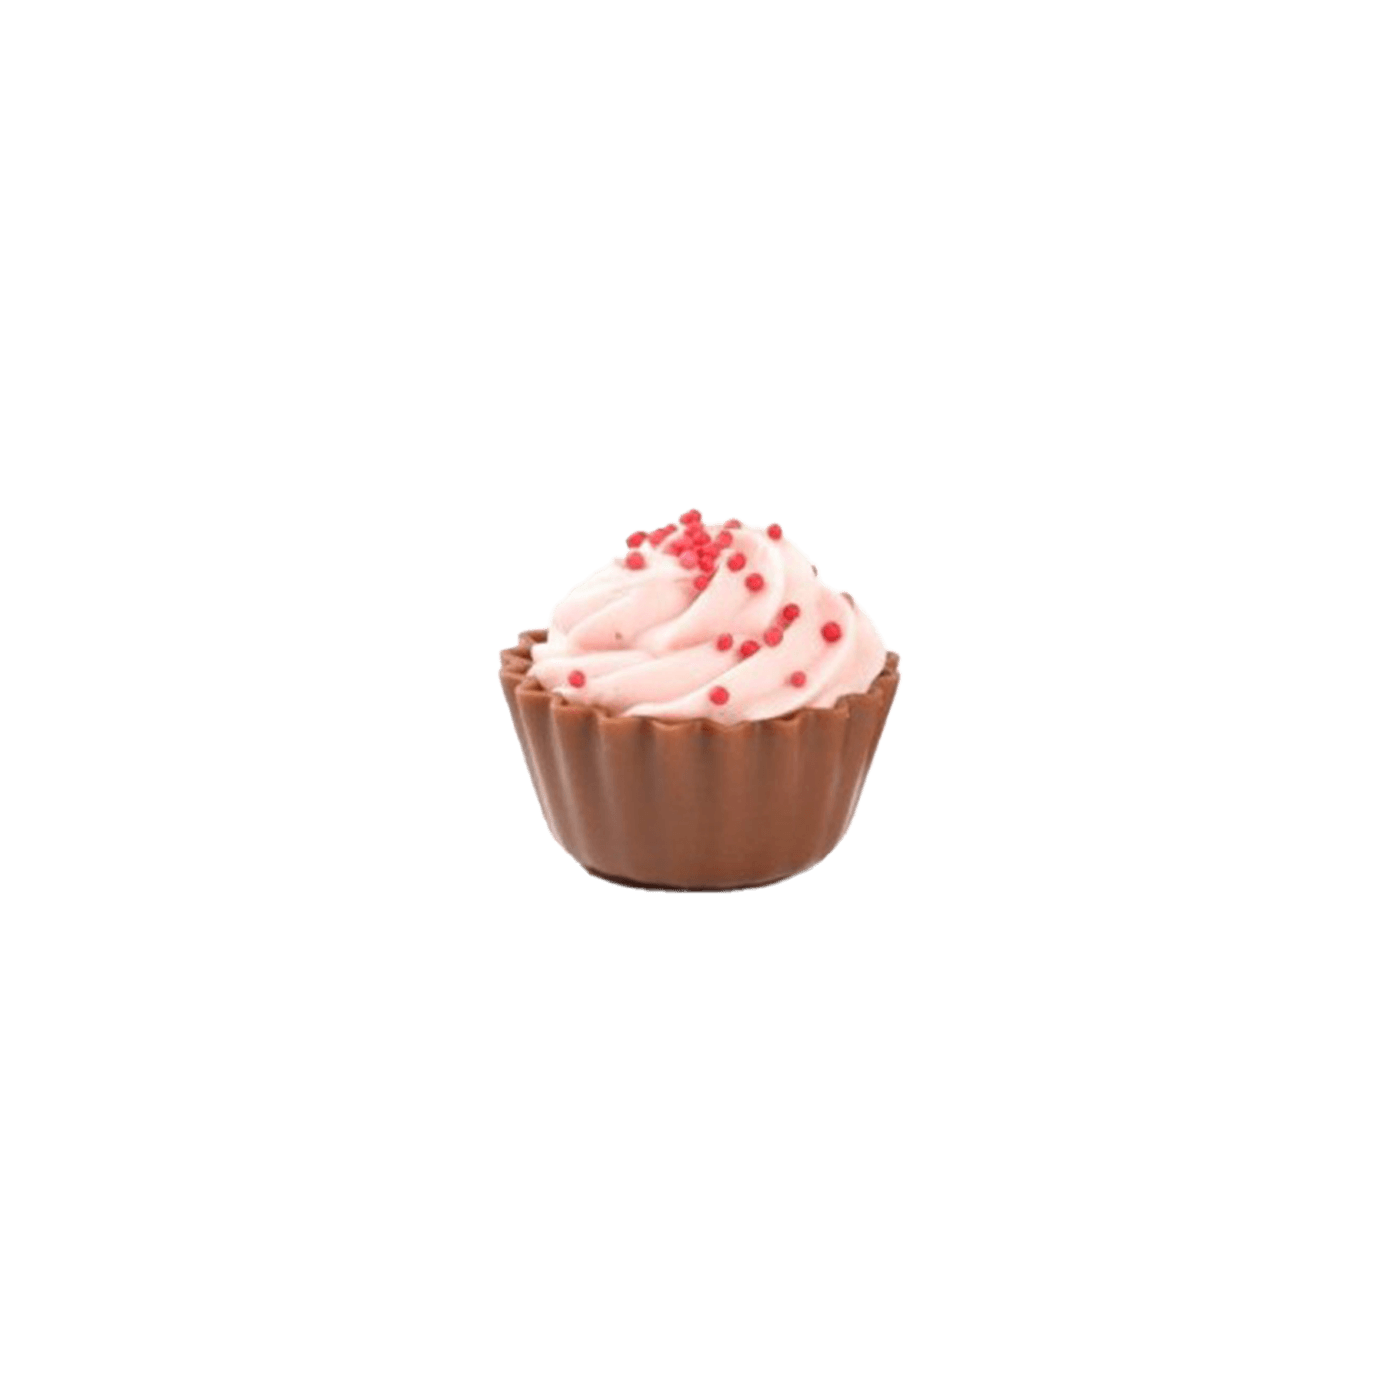 Cupcakes Rose aardbei fondant 19,5g 1,65kg NIEUWE INHOUD